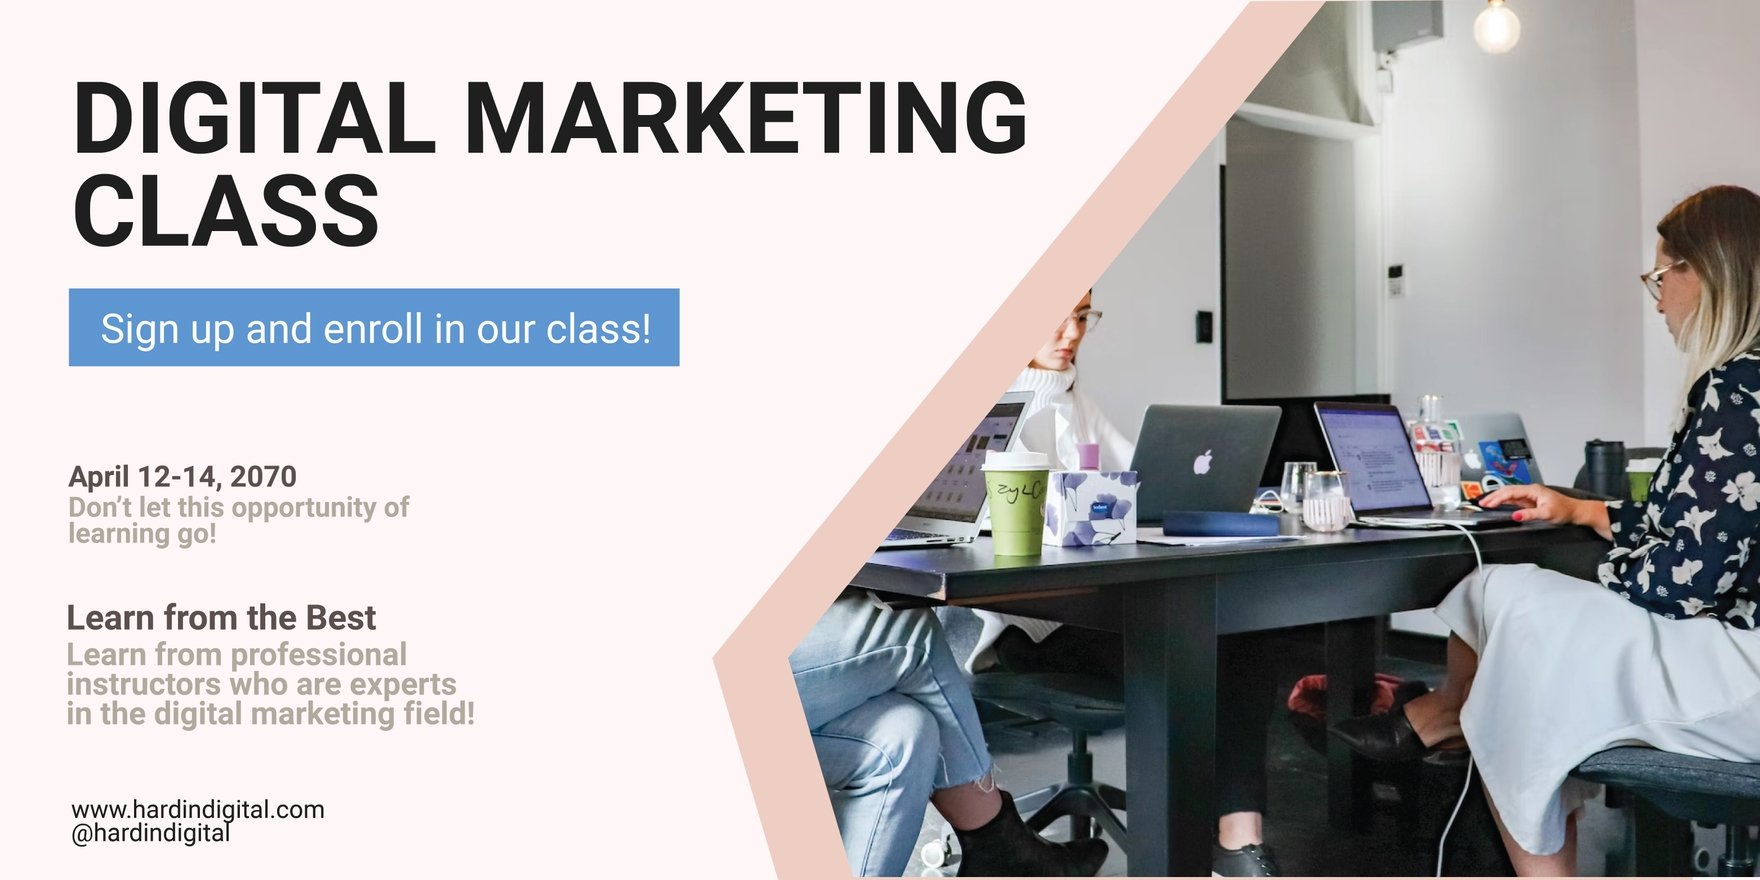 Digital Marketing Class Banner